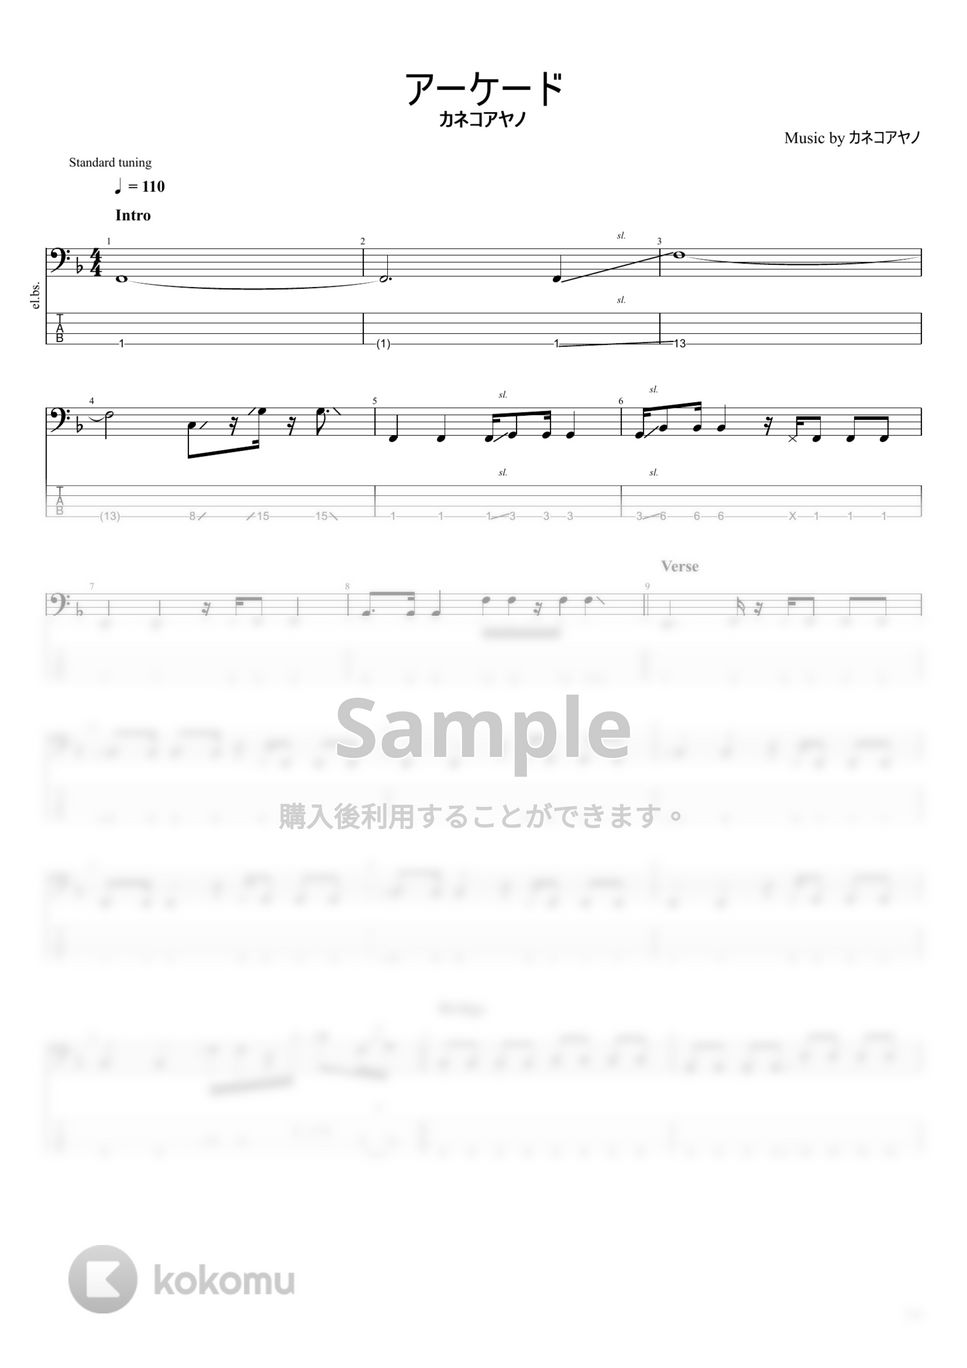 カネコアヤノ - カネコアヤノ楽譜集 (10曲) by まっきん